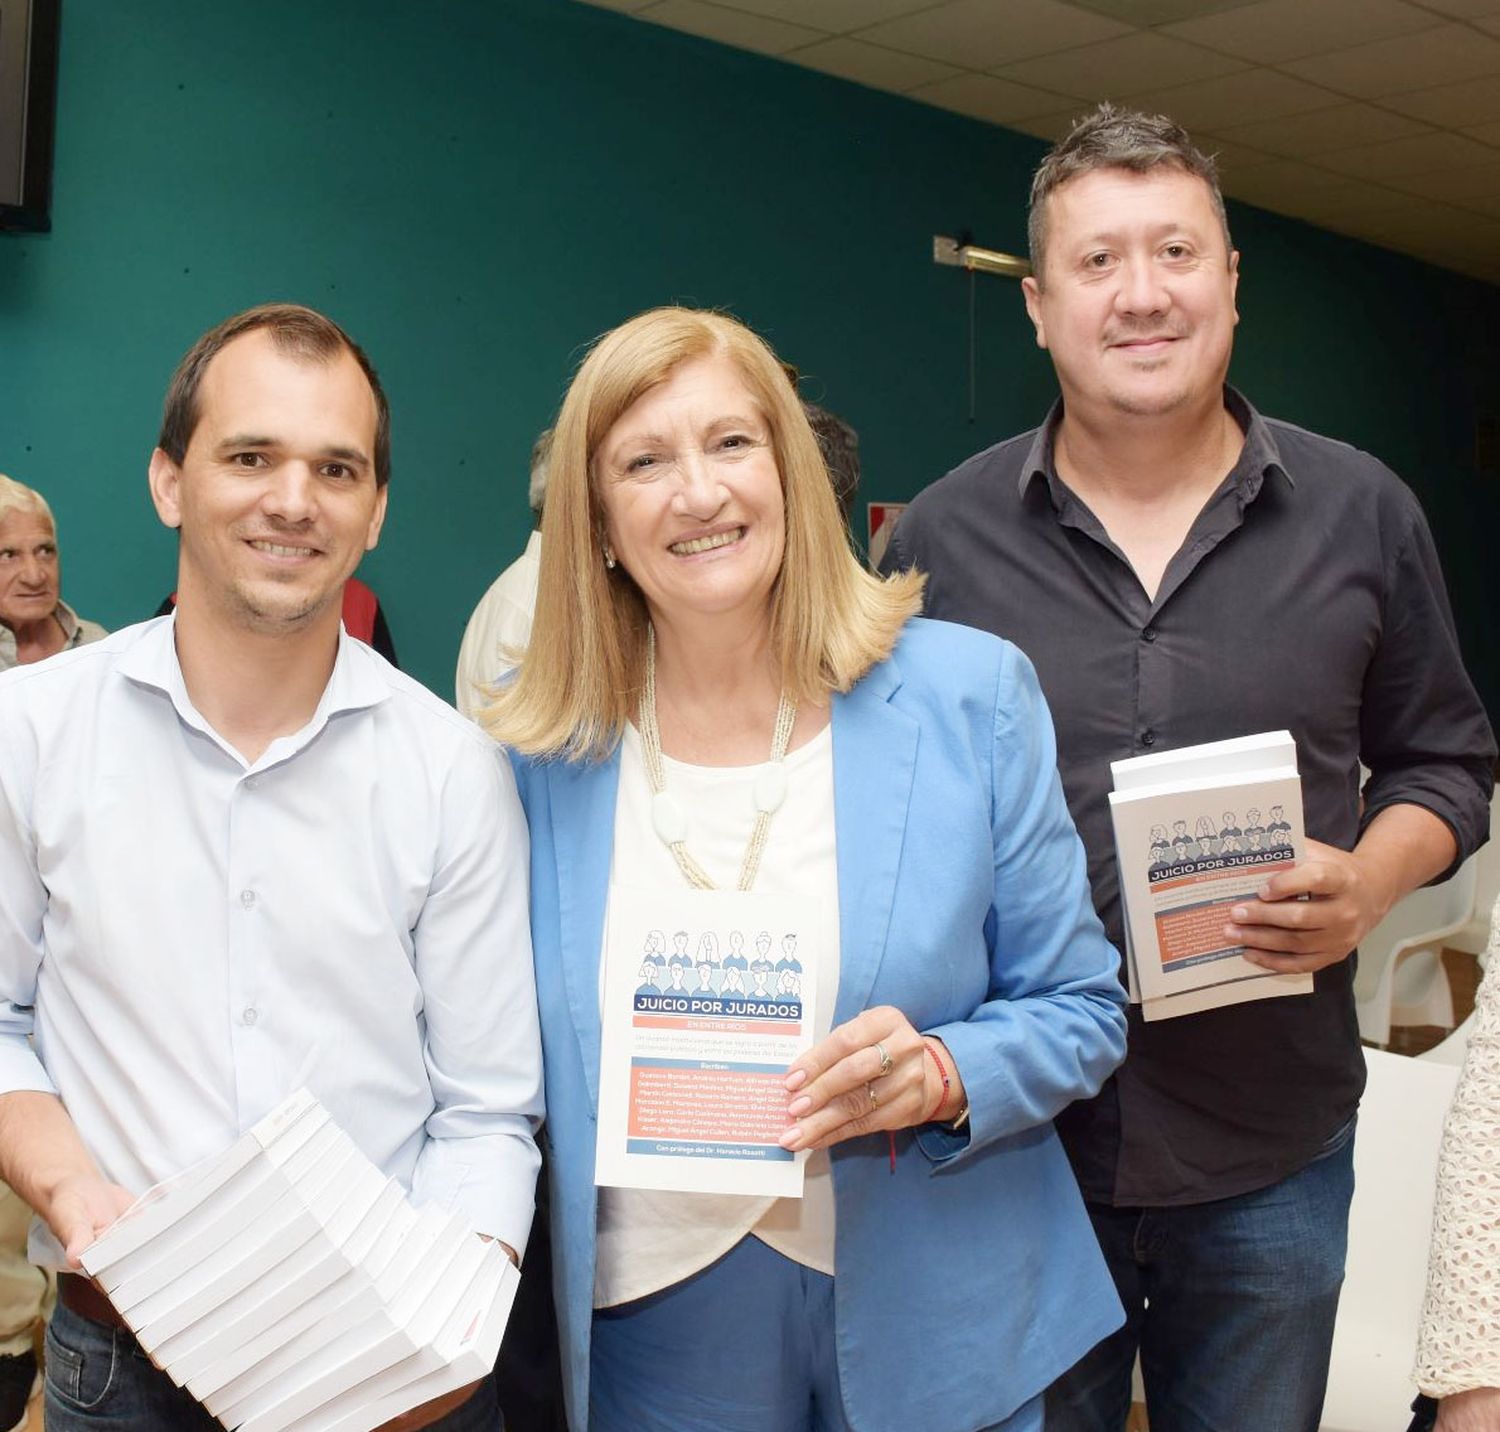 Se presentó en Concepción del Uruguay el libro sobre juicio por jurados en Entre Ríos